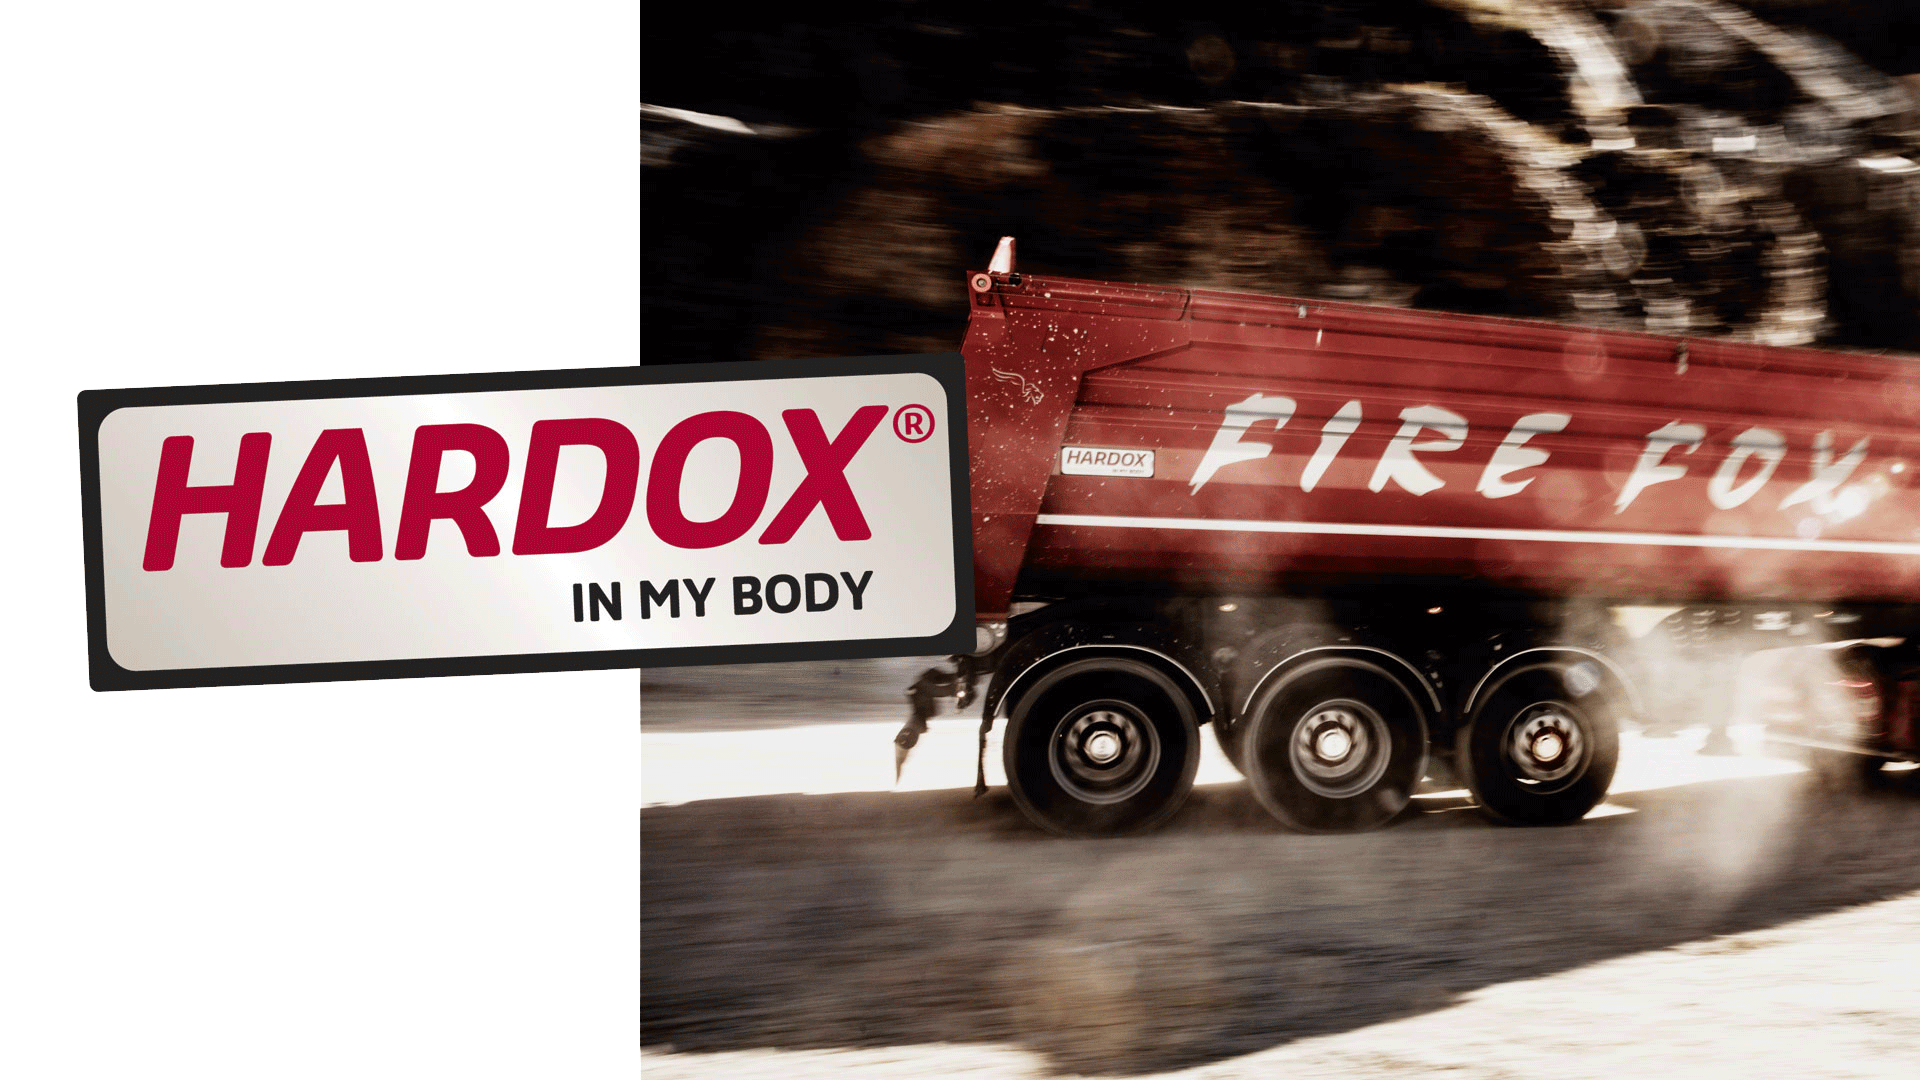 ตัวถังรถบรรทุก Firefox สีแดงเพลิง ทำจากแผ่นเหล็กกันสึก Hardox®